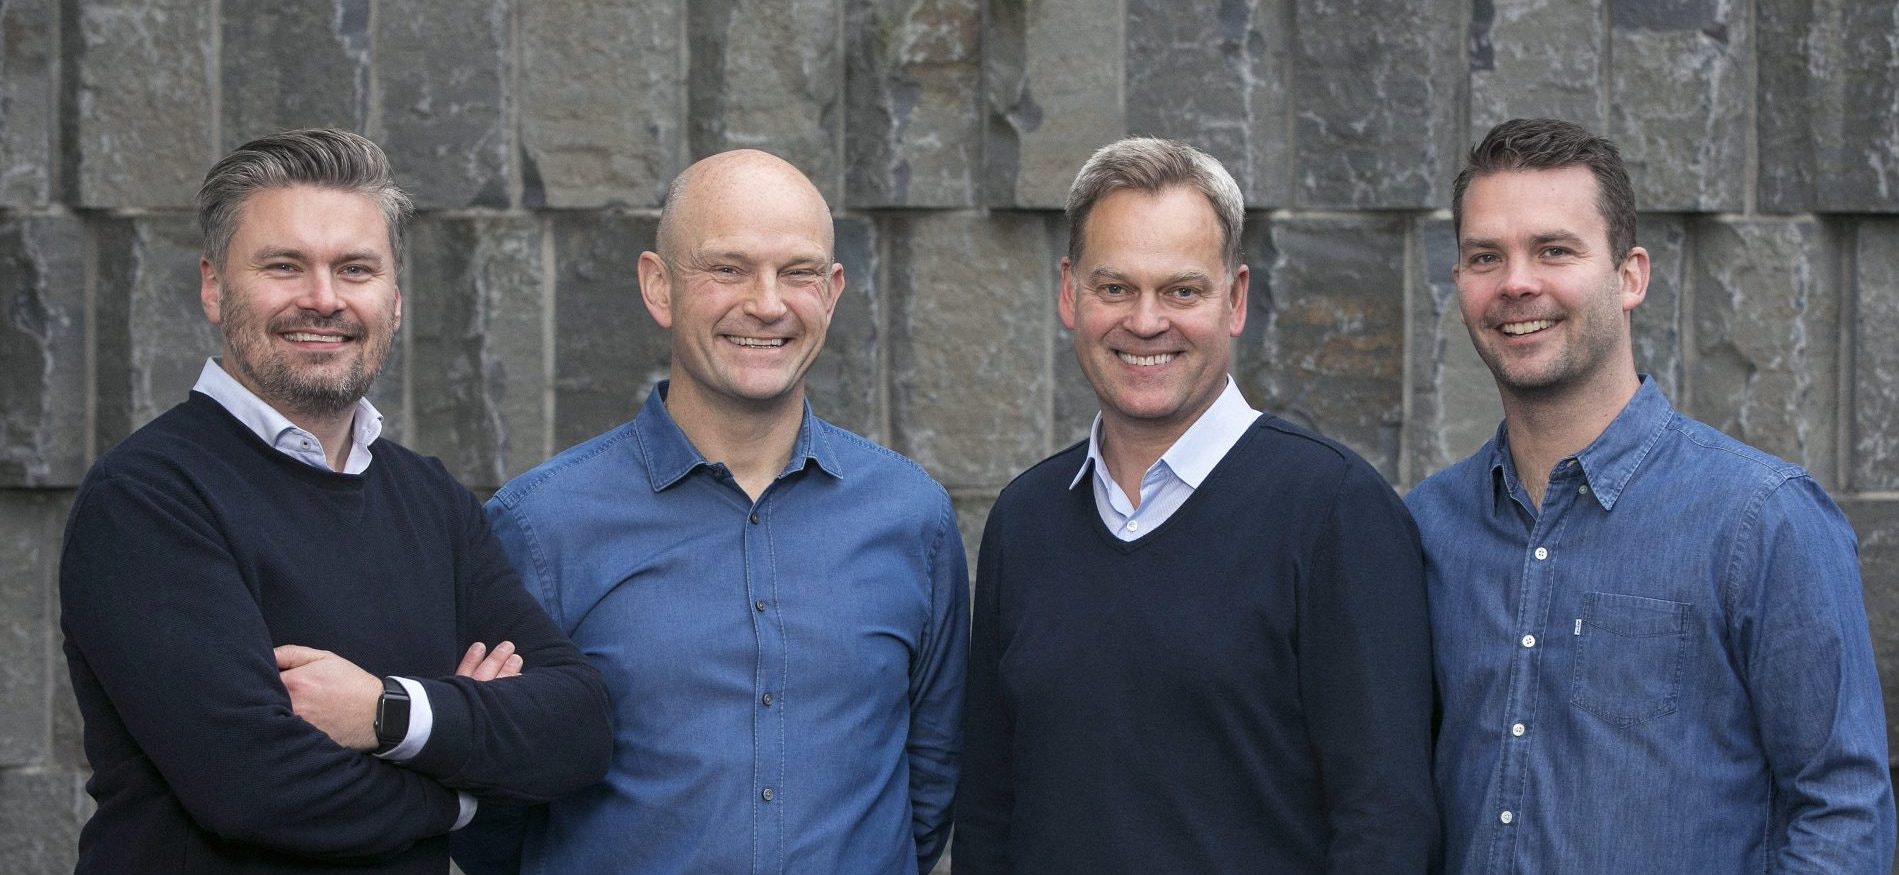 Group picture of the Monerium founders Hjörtur Hjartarson, Sveinn Valfells, Jón Helgi Egilsson and Gísli Kristjánsson